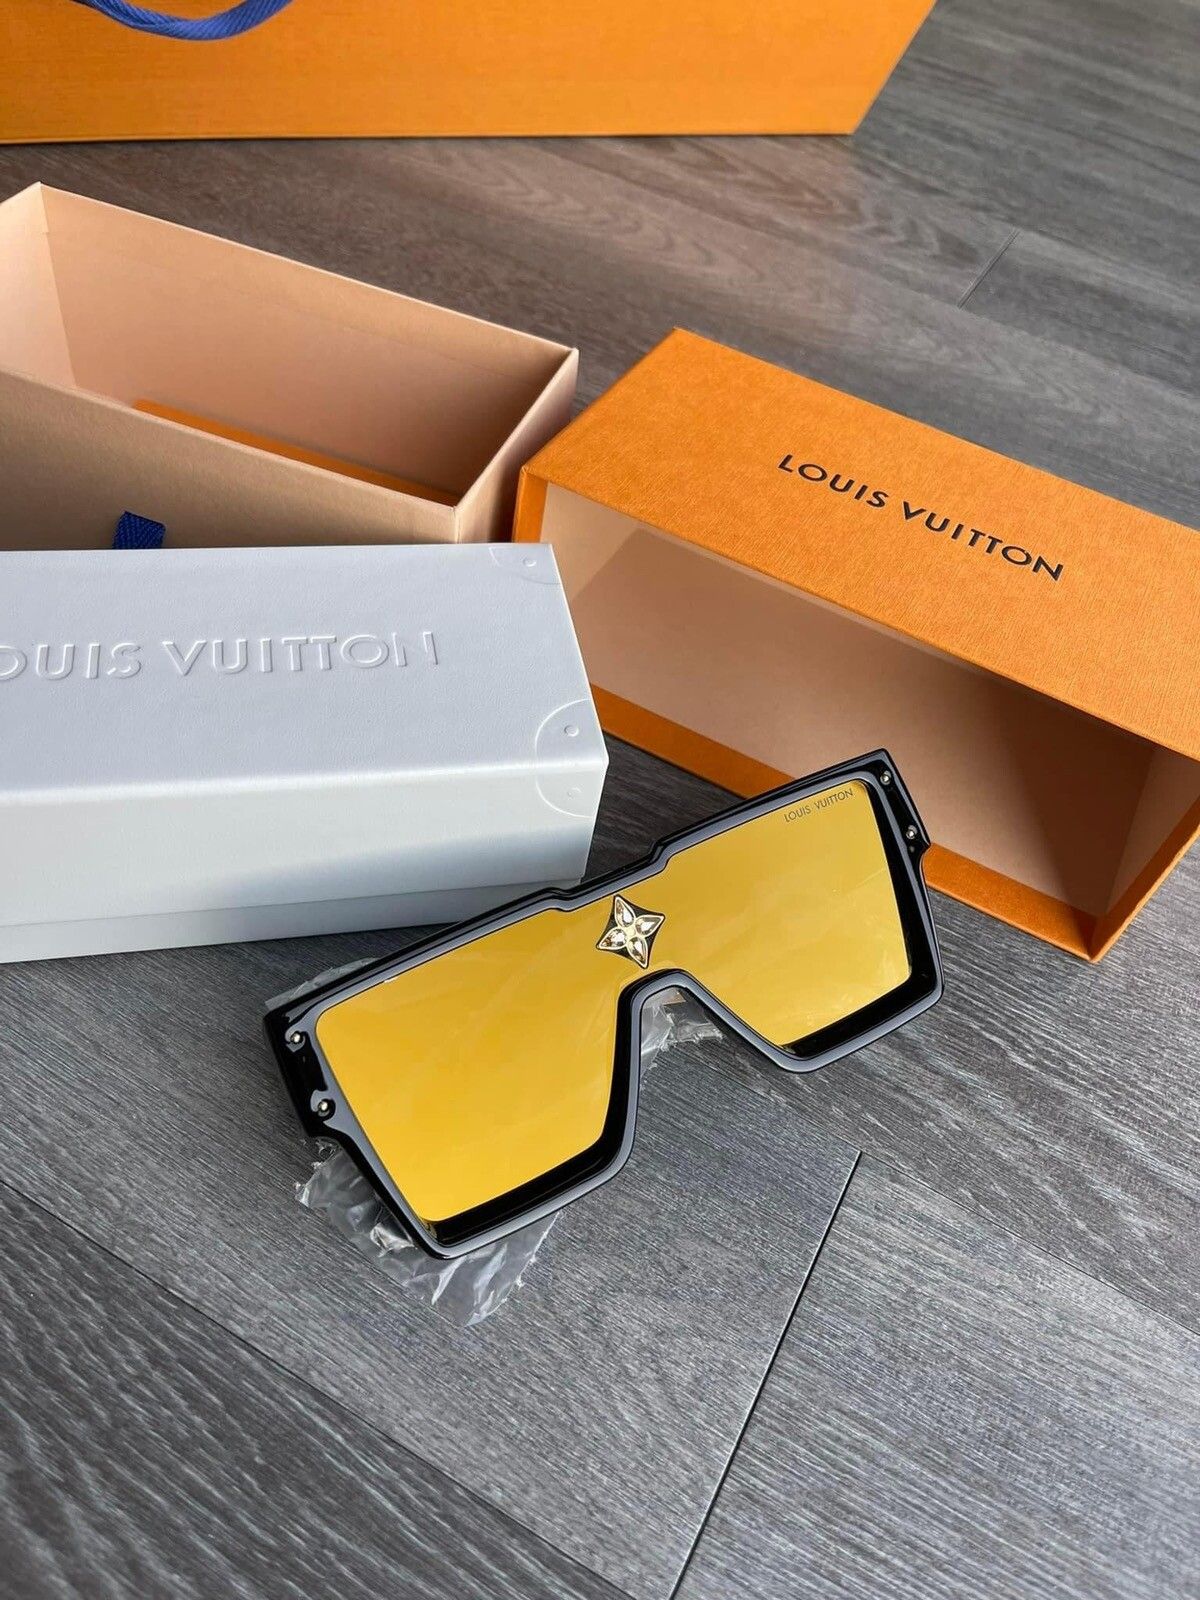 Louis Vuitton Accessories | Louis Vuitton Men LV Waimea Sunglasses Black Monogram Logo Z1082e Shades Glasses | Color: Black | Size: Os 